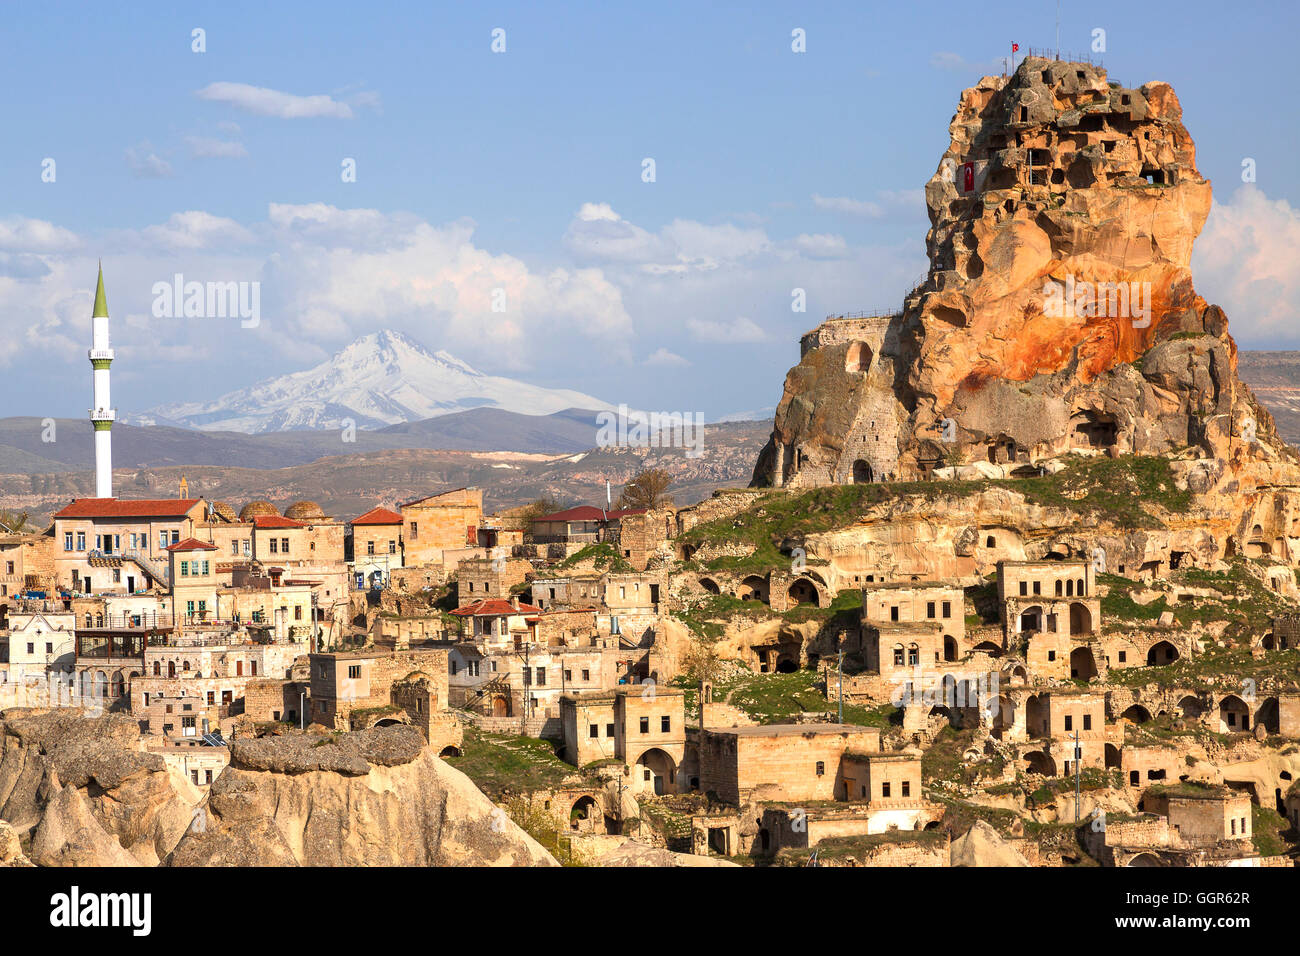 Stadt Ortahisar in Kappadokien mit erloschenen Vulkans Erciyes im Hintergrund. Stockfoto